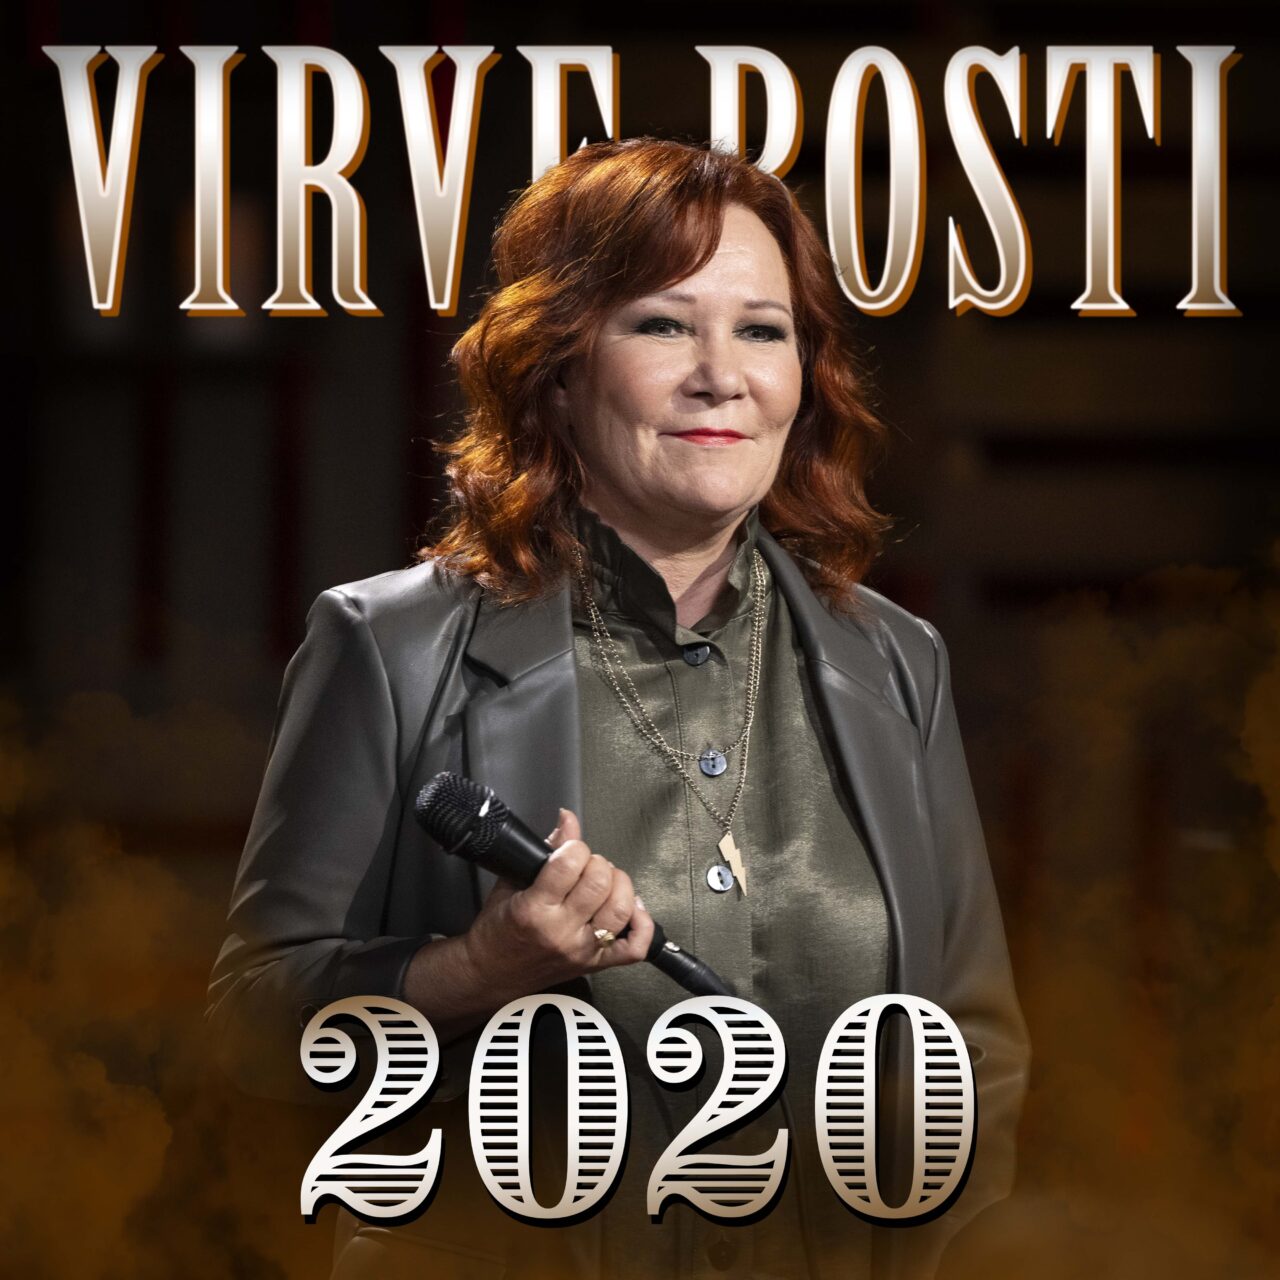 Kansikuva - Virve Rosti - 2020 (Vain elämää kausi 14)